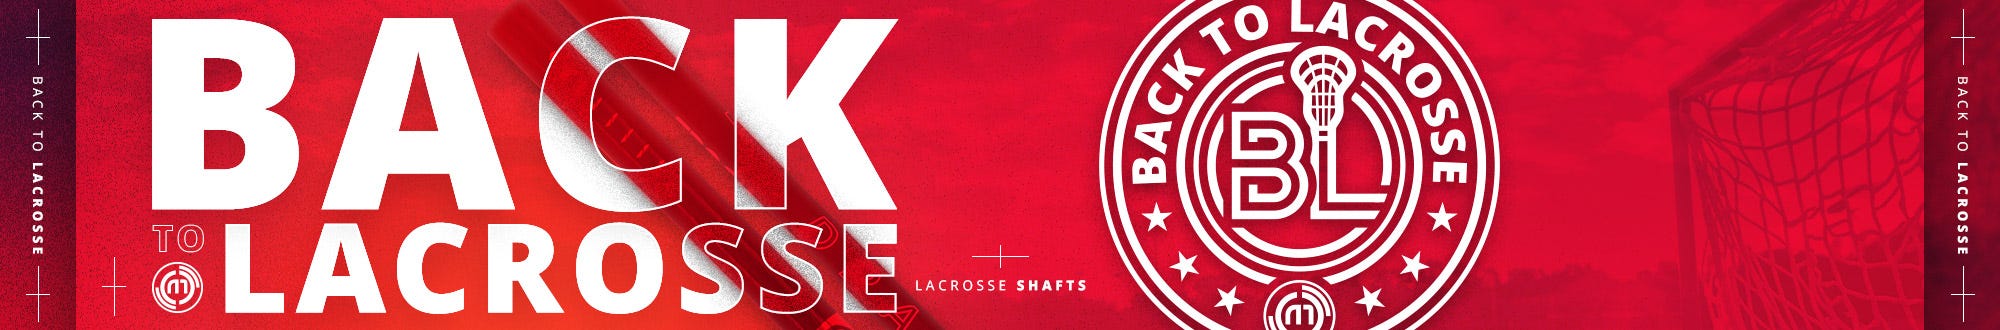 Back to Lacrosse: Shafts